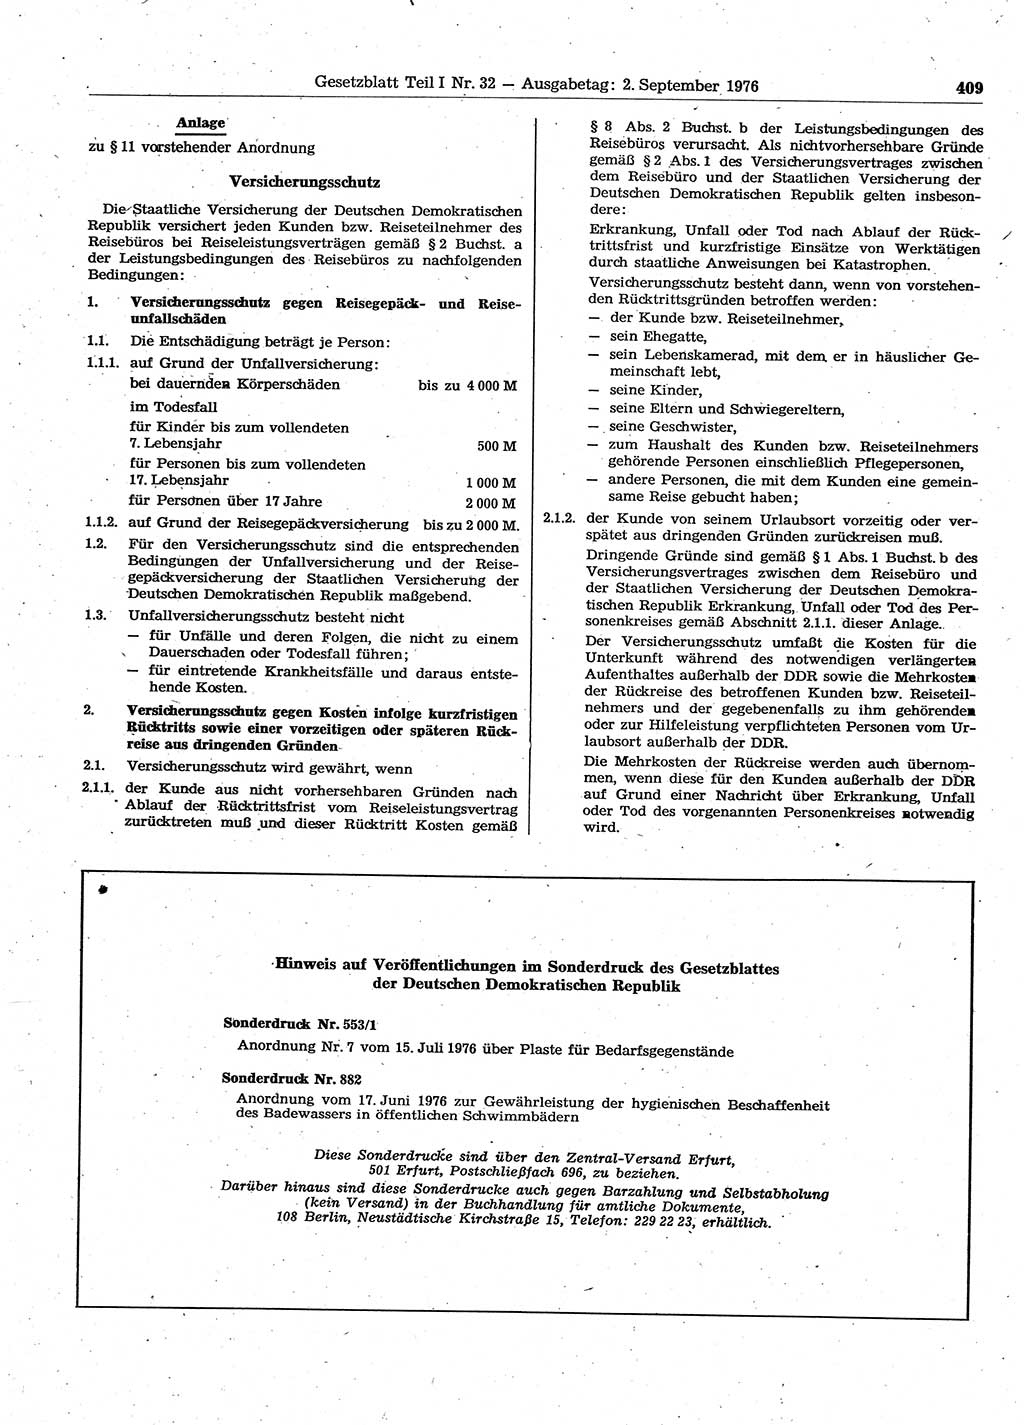 Gesetzblatt (GBl.) der Deutschen Demokratischen Republik (DDR) Teil Ⅰ 1976, Seite 409 (GBl. DDR Ⅰ 1976, S. 409)